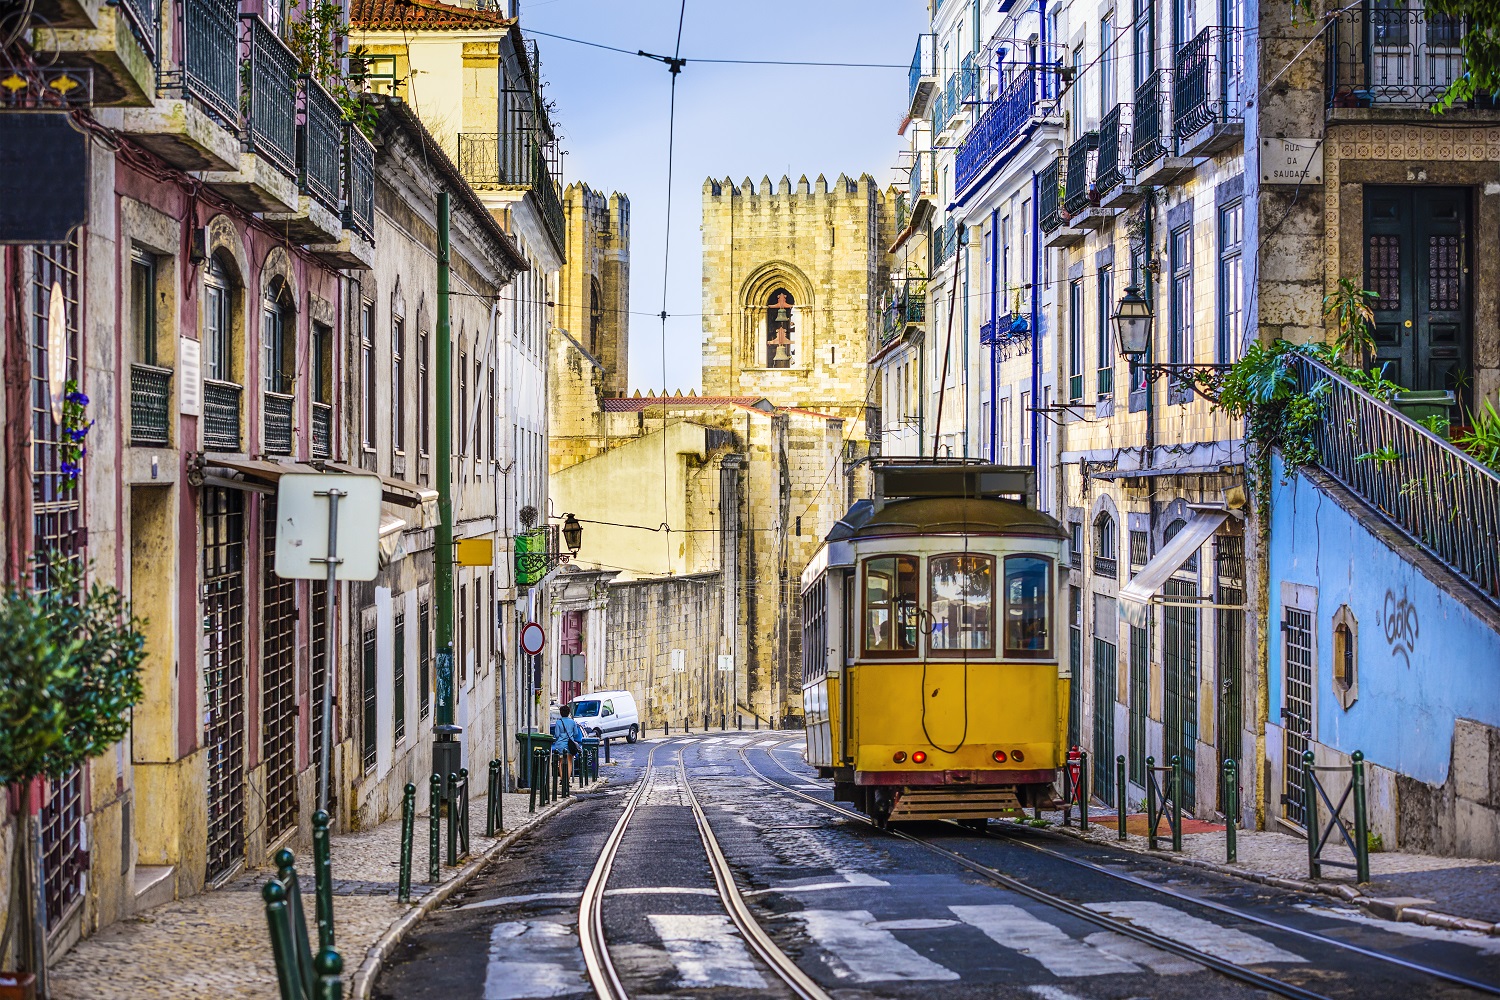 Companhias aéreas internacionais apostam cada vez mais em Portugal